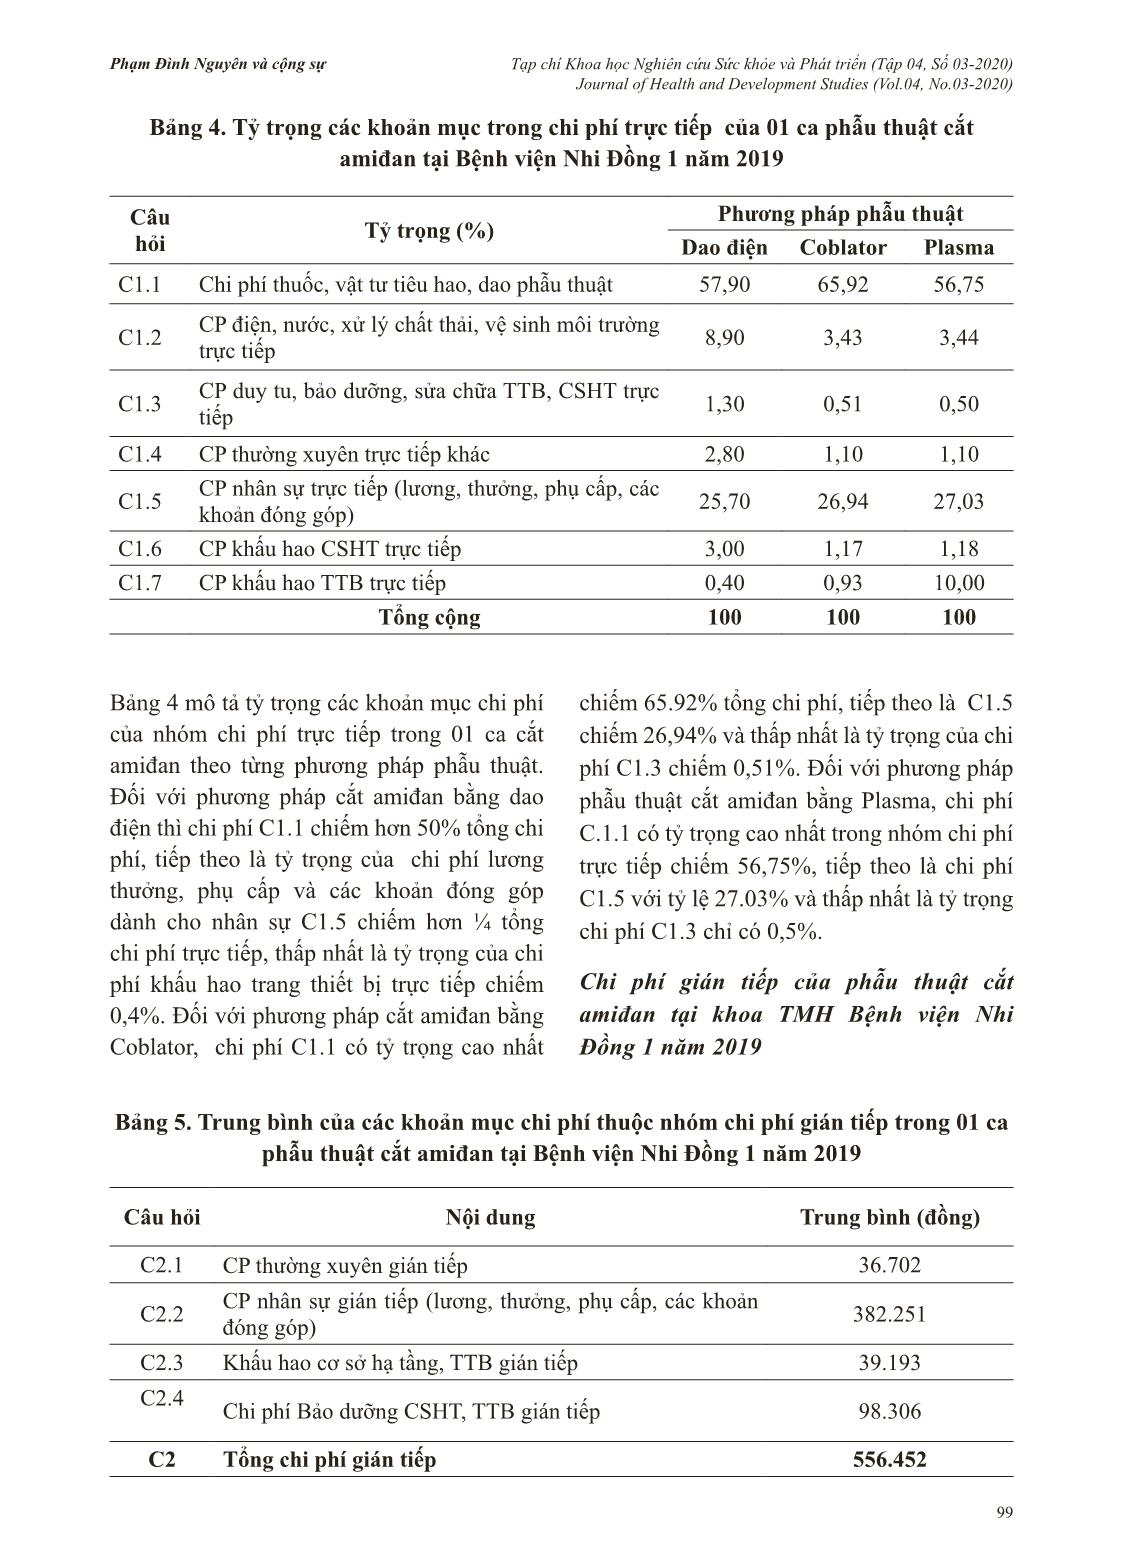 Chi phí phẫu thuật cắt amiđan tại bệnh viện Nhi Đồng 1 năm 2019 trang 5